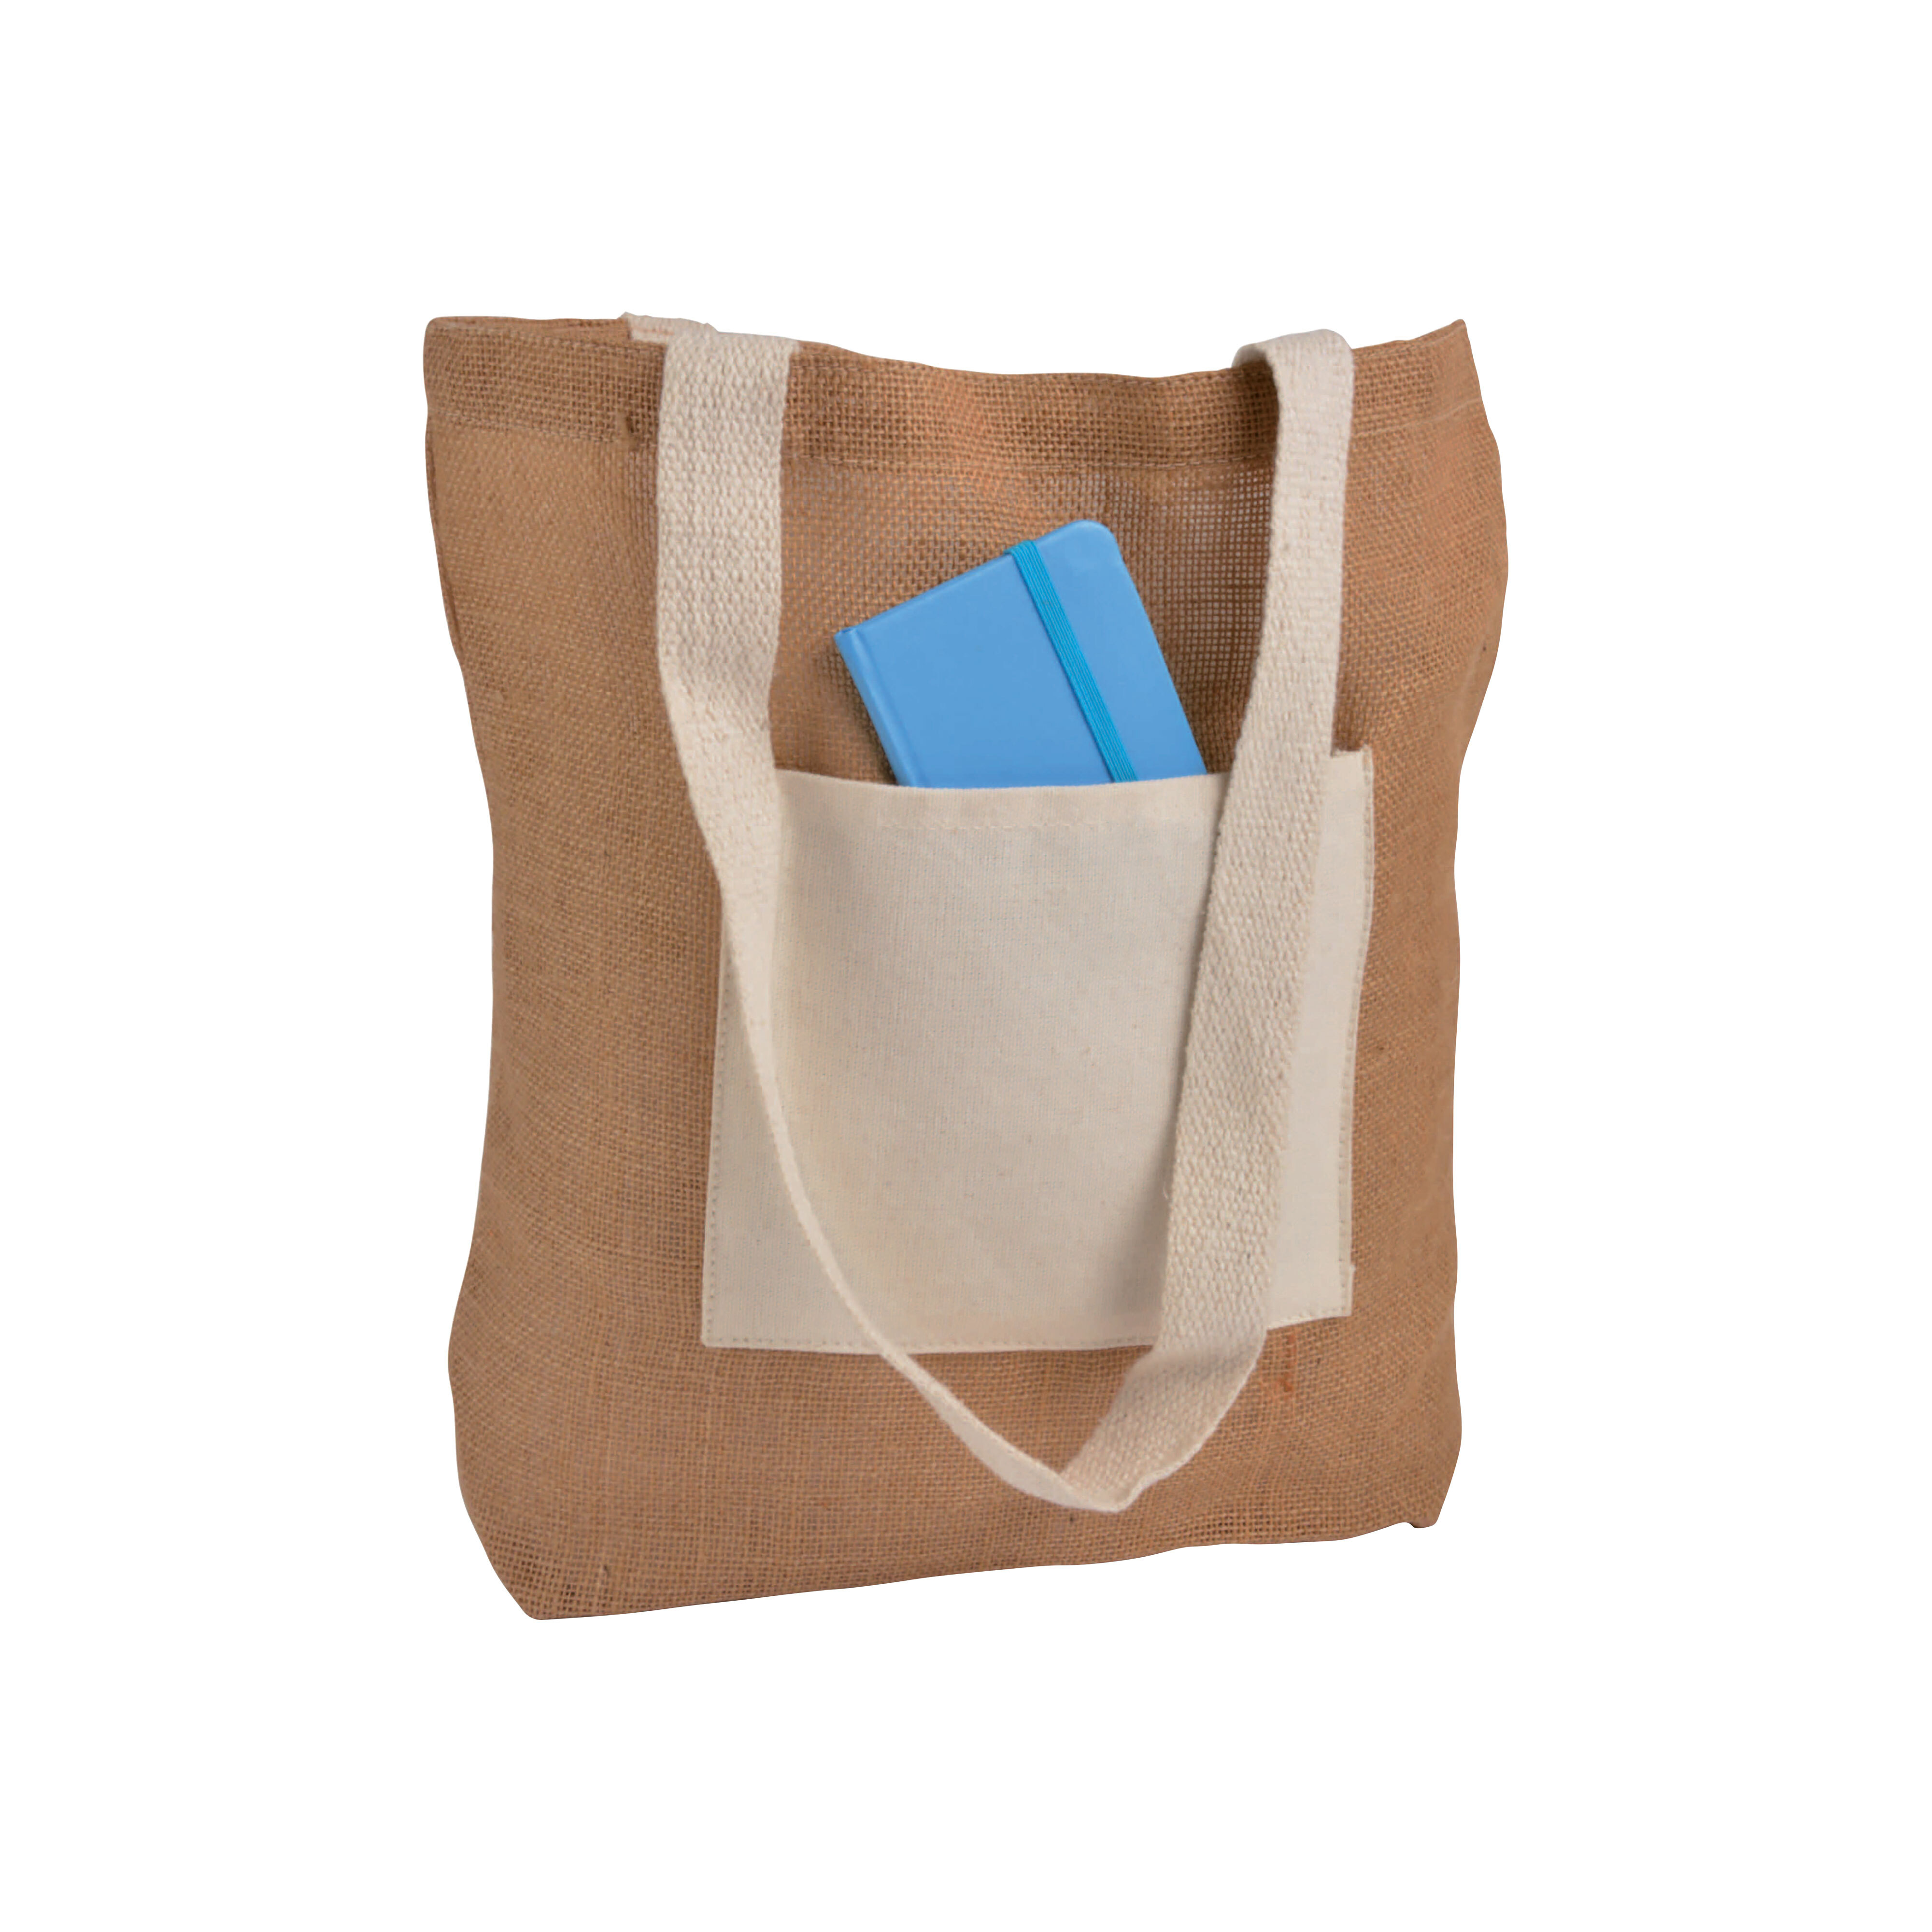 Shopper con soffietto alla base in Juta con manici e tasca esterna (18 x 15 cm) in cotone - Handle - 09148